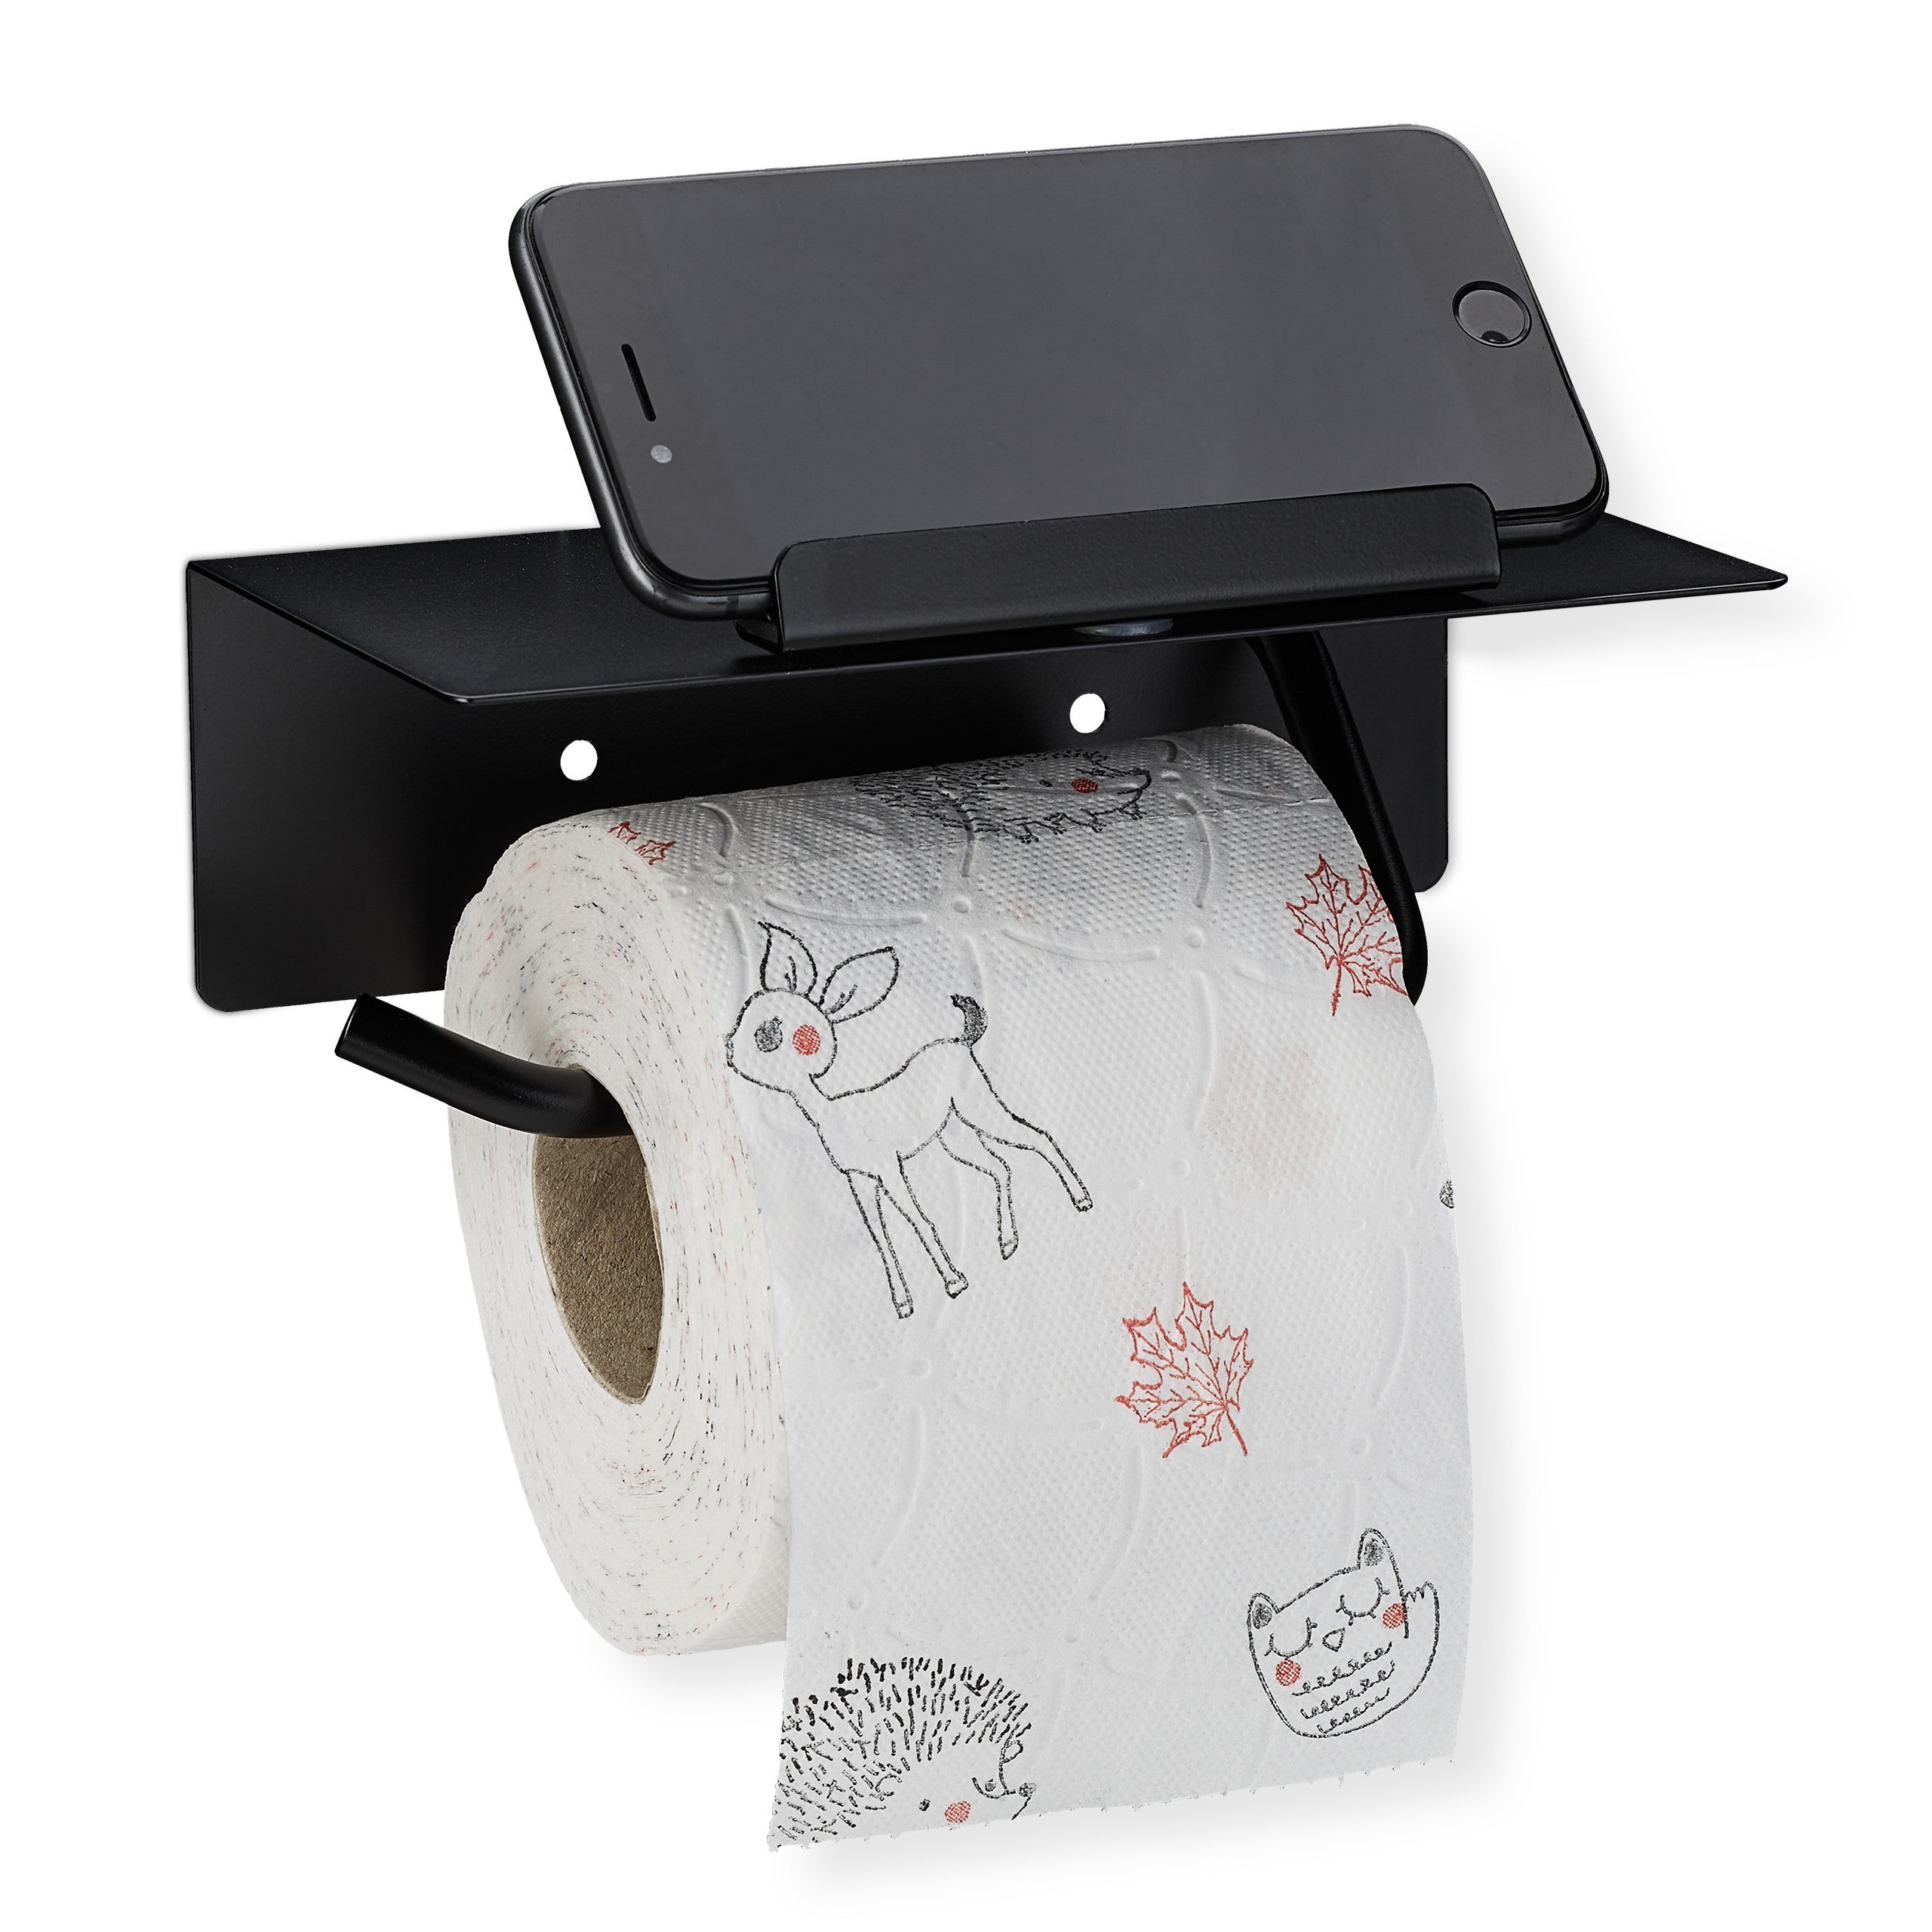 Support de rouleau de support de papier toilette noir mural avec